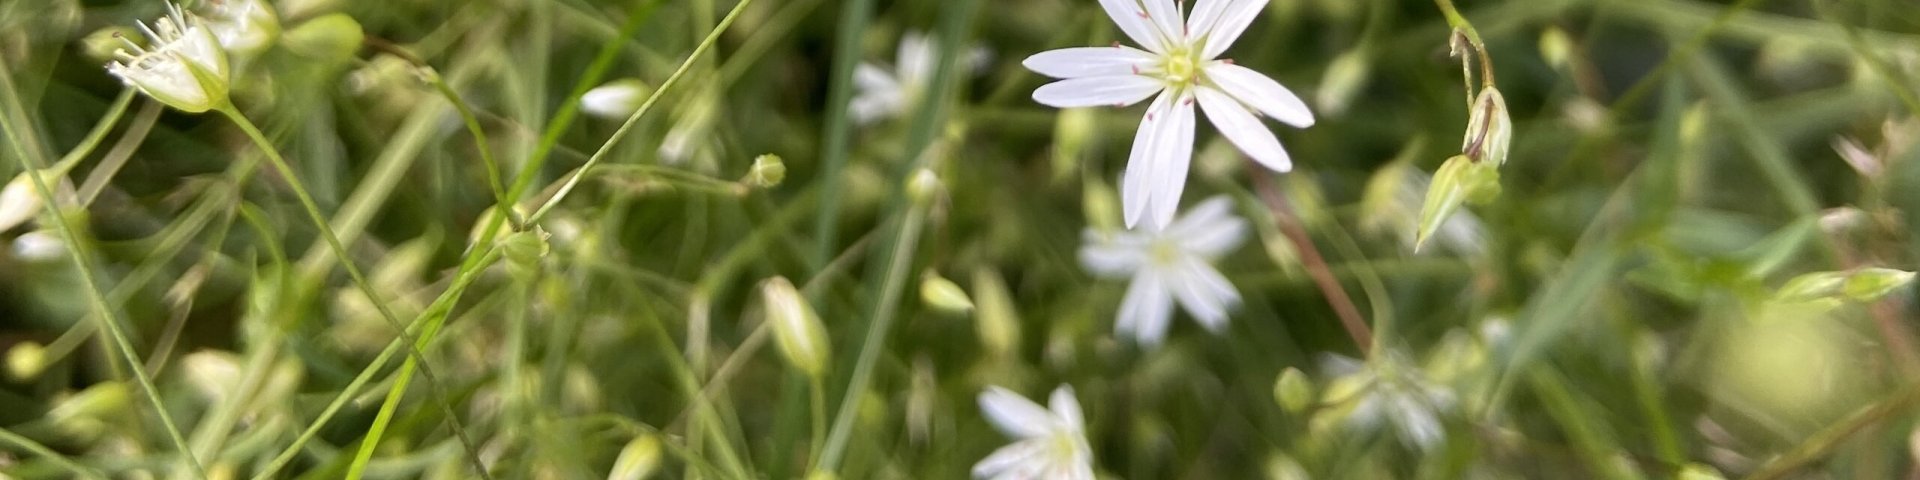 small white flowers, väiksed valged lilled